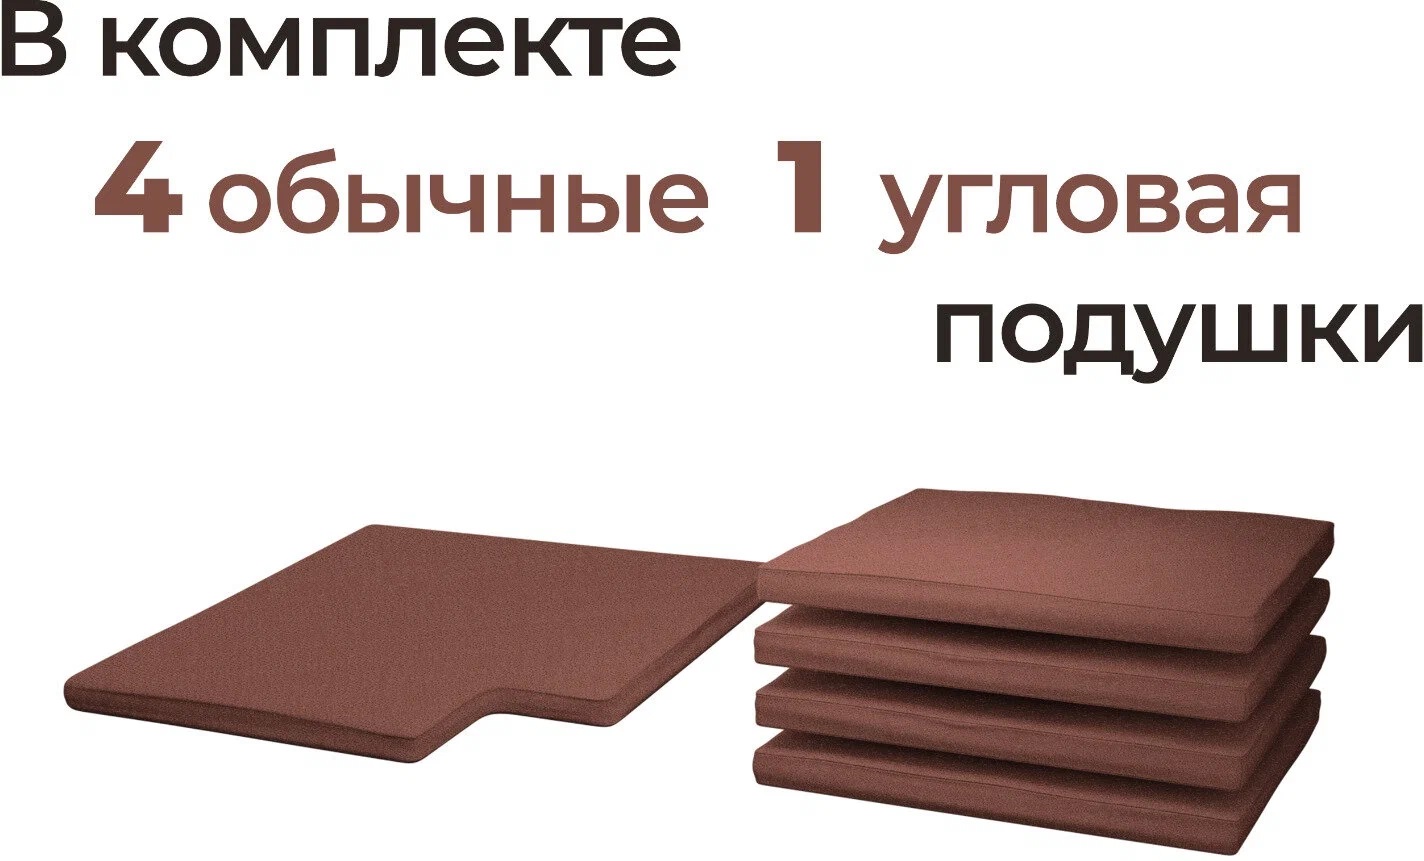 Комплект подушек для углового дивана Дачник Демидов М8838 225169 54см 52см коричневый